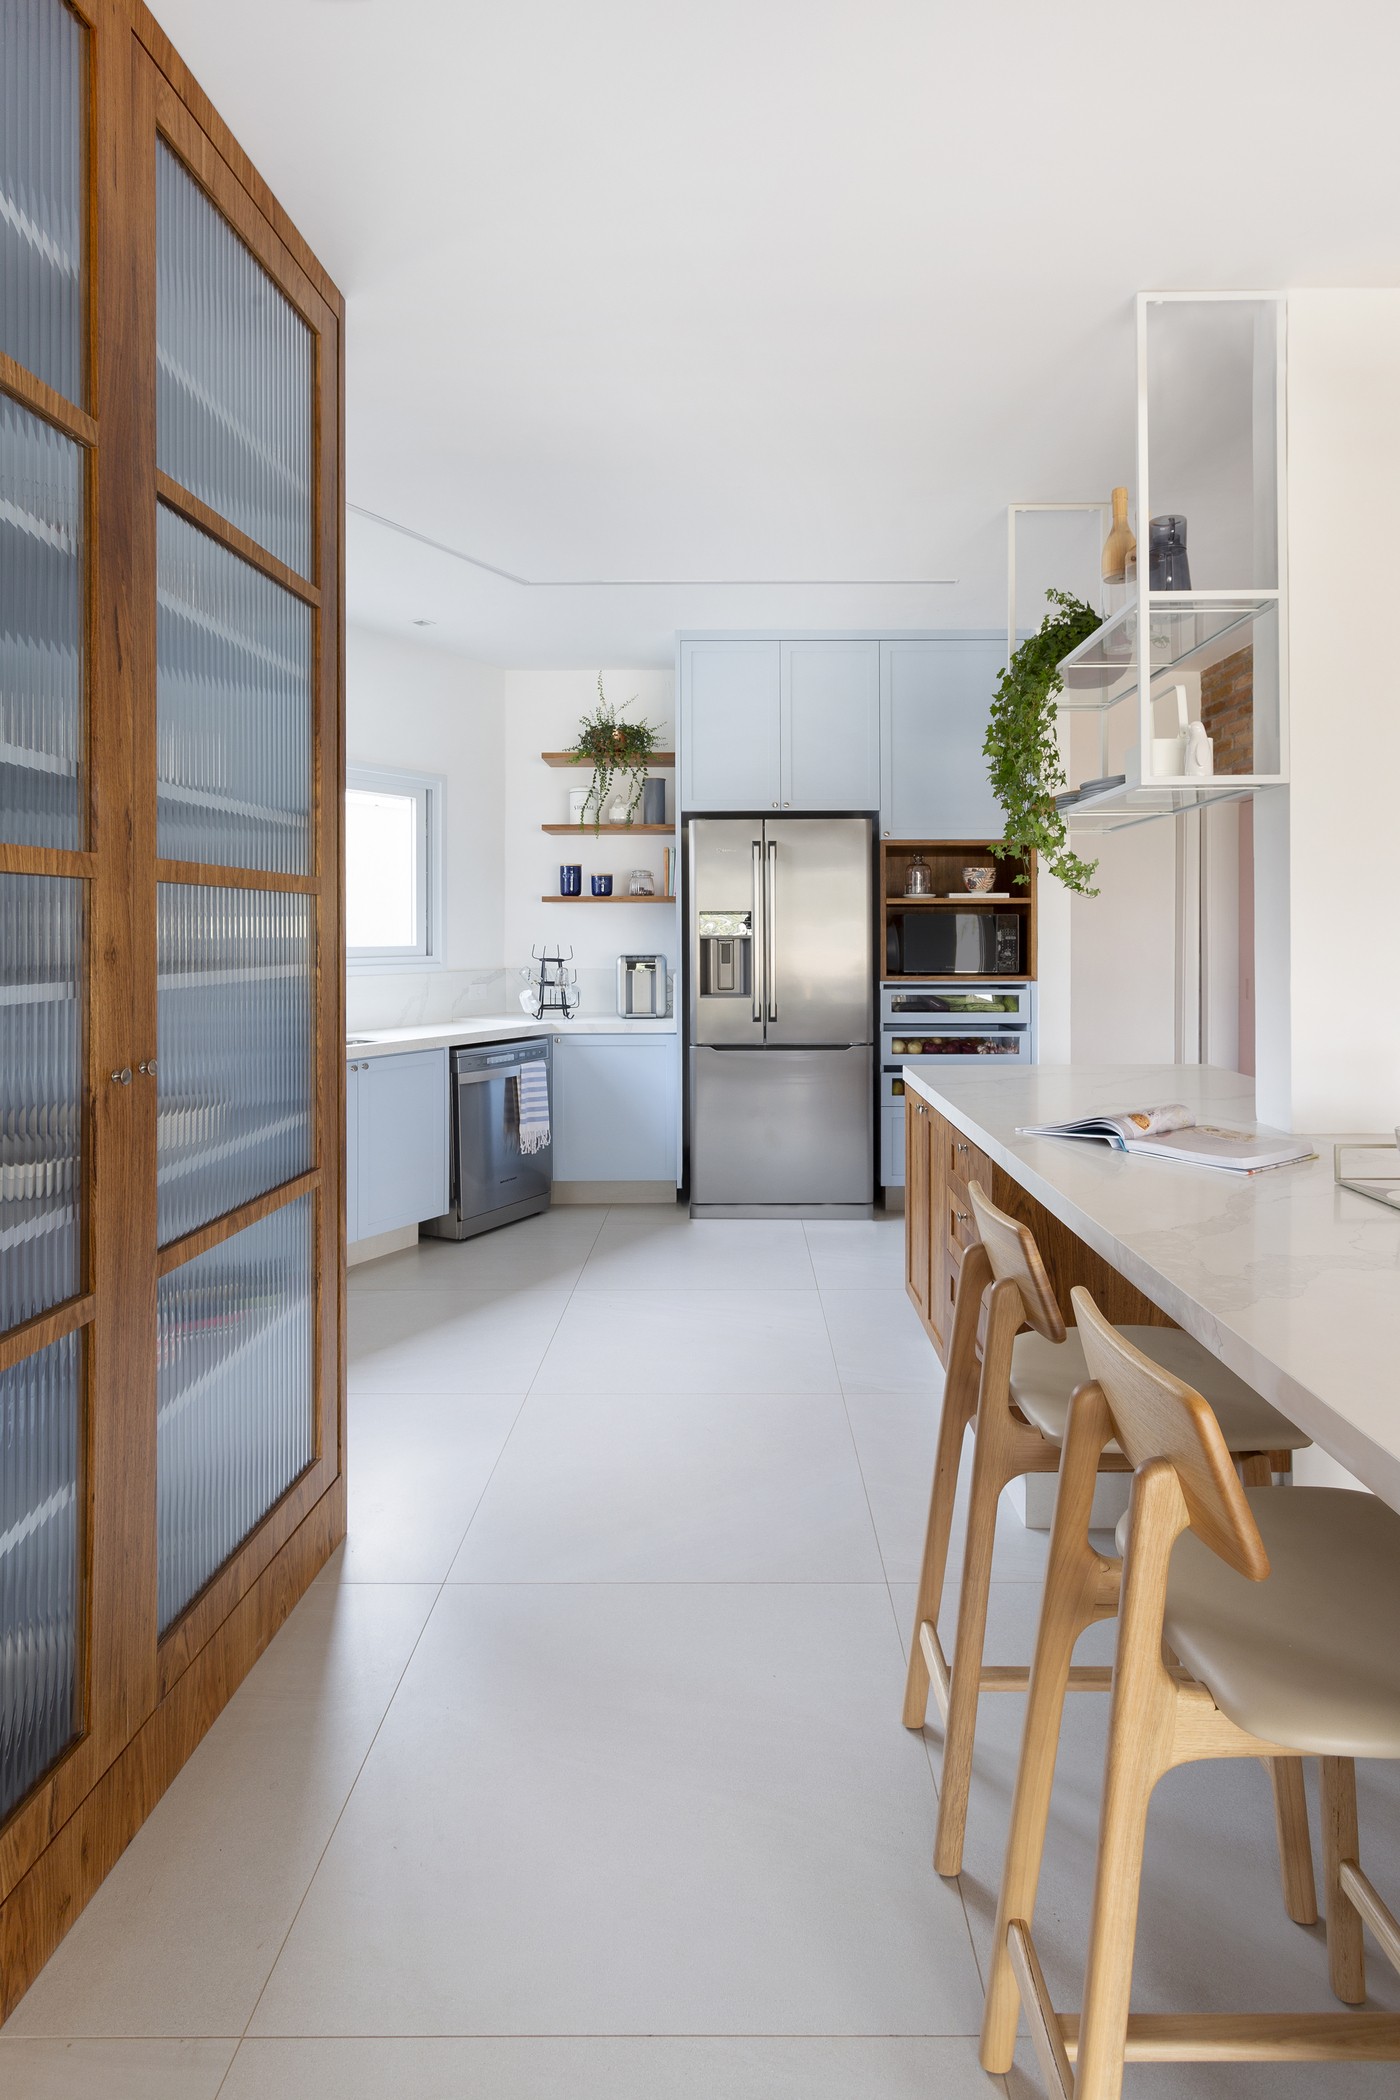 Décor do dia: cozinha aberta tem armários azuis, ilha central e parede de tijolinhos (Foto: Julia Ribeiro)